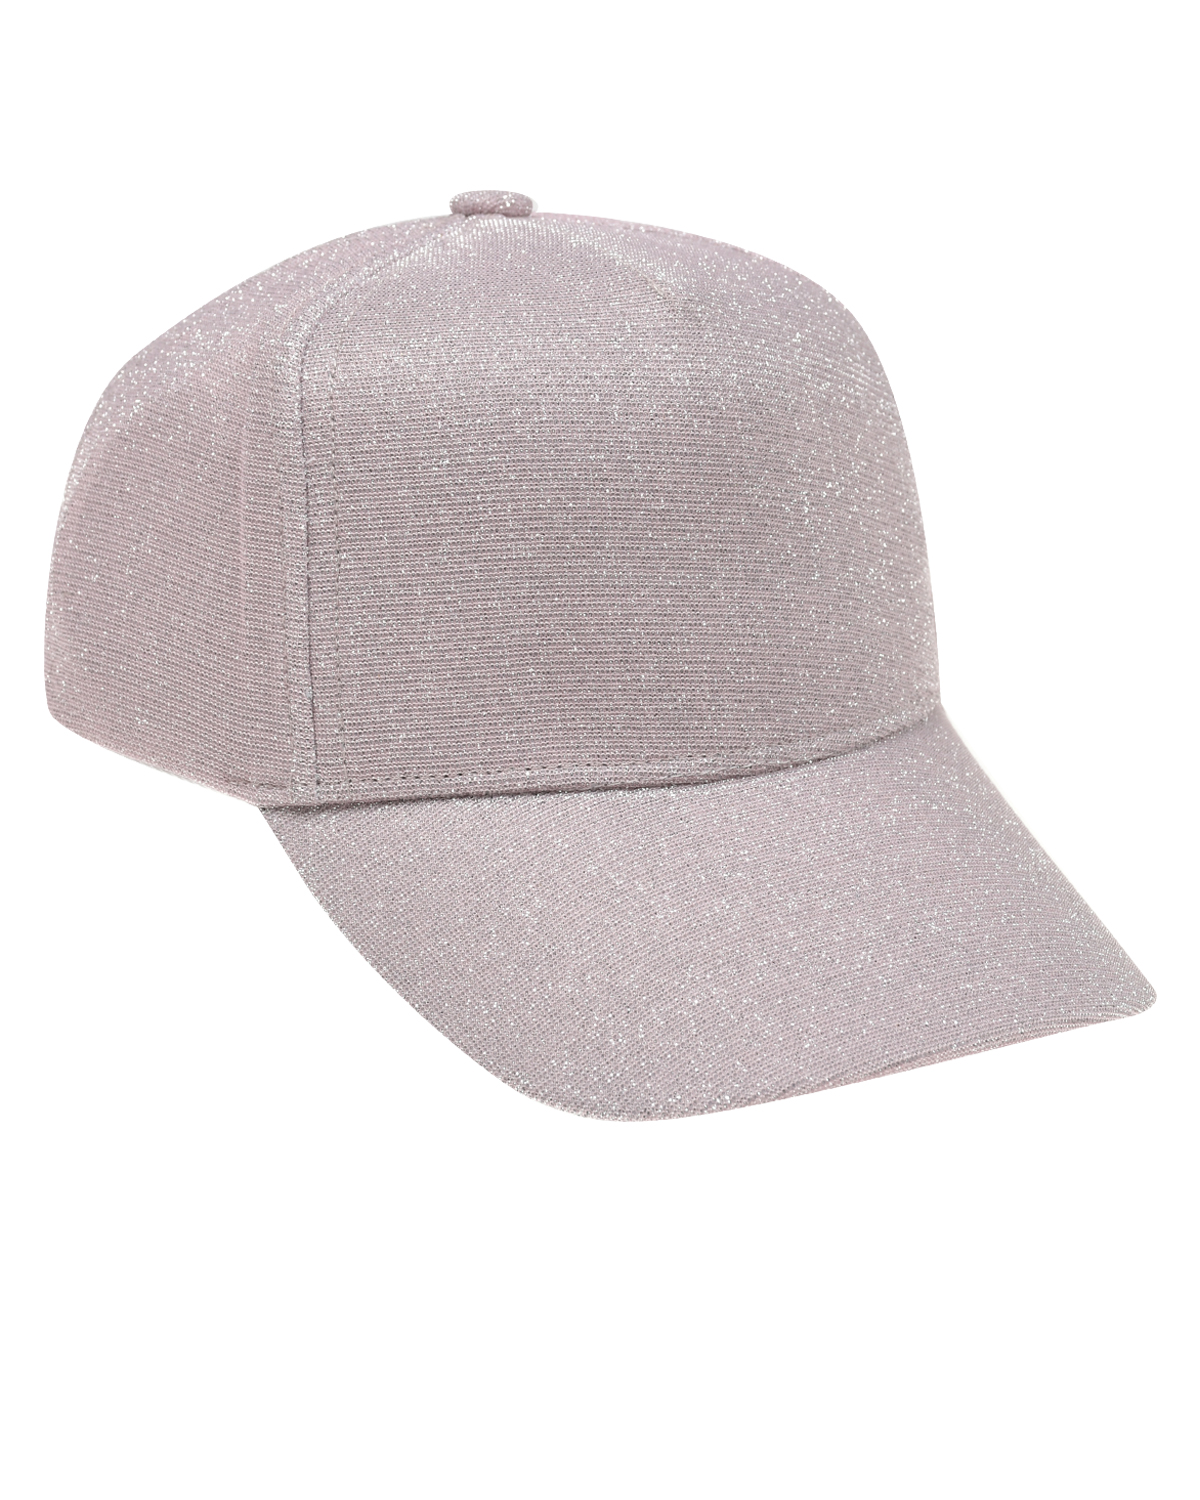 Светло-розовая кепка с глиттером Jan&Sofie, размер 56, цвет розовый - фото 1